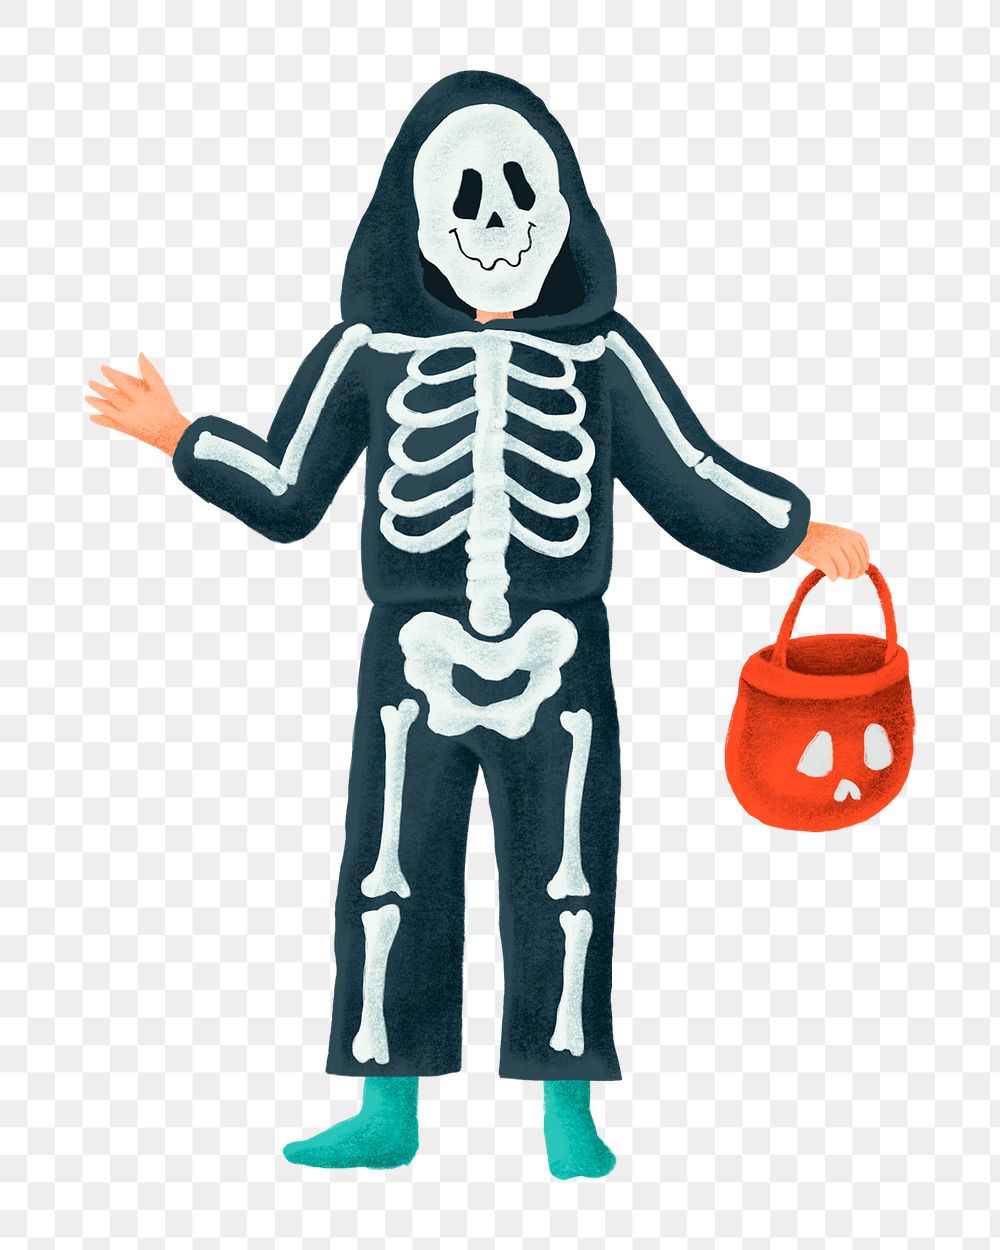 Boy png skeleton costume sticker, Halloween illustration, transparent background